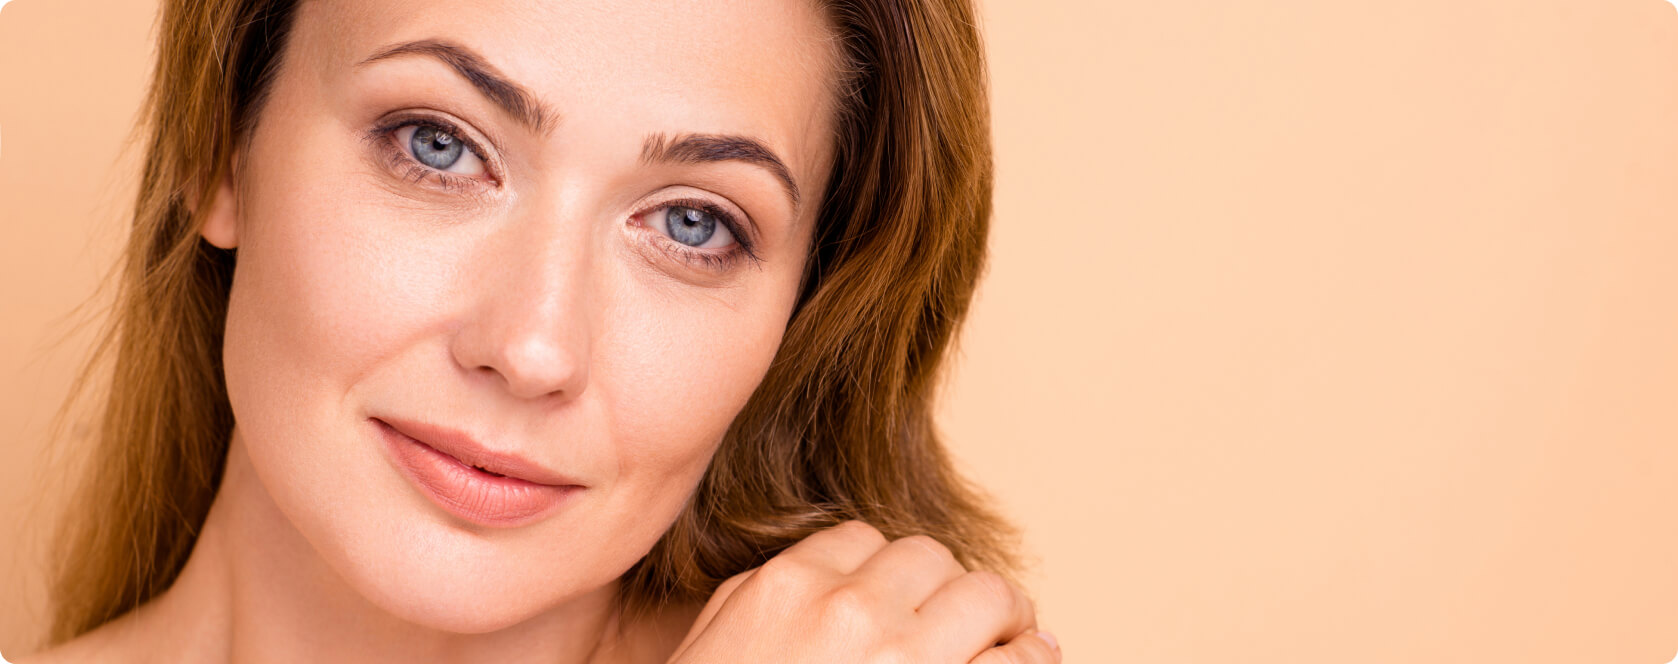 Hautalterung - Wie lassen sich Hautveränderungen im Alter behandeln?